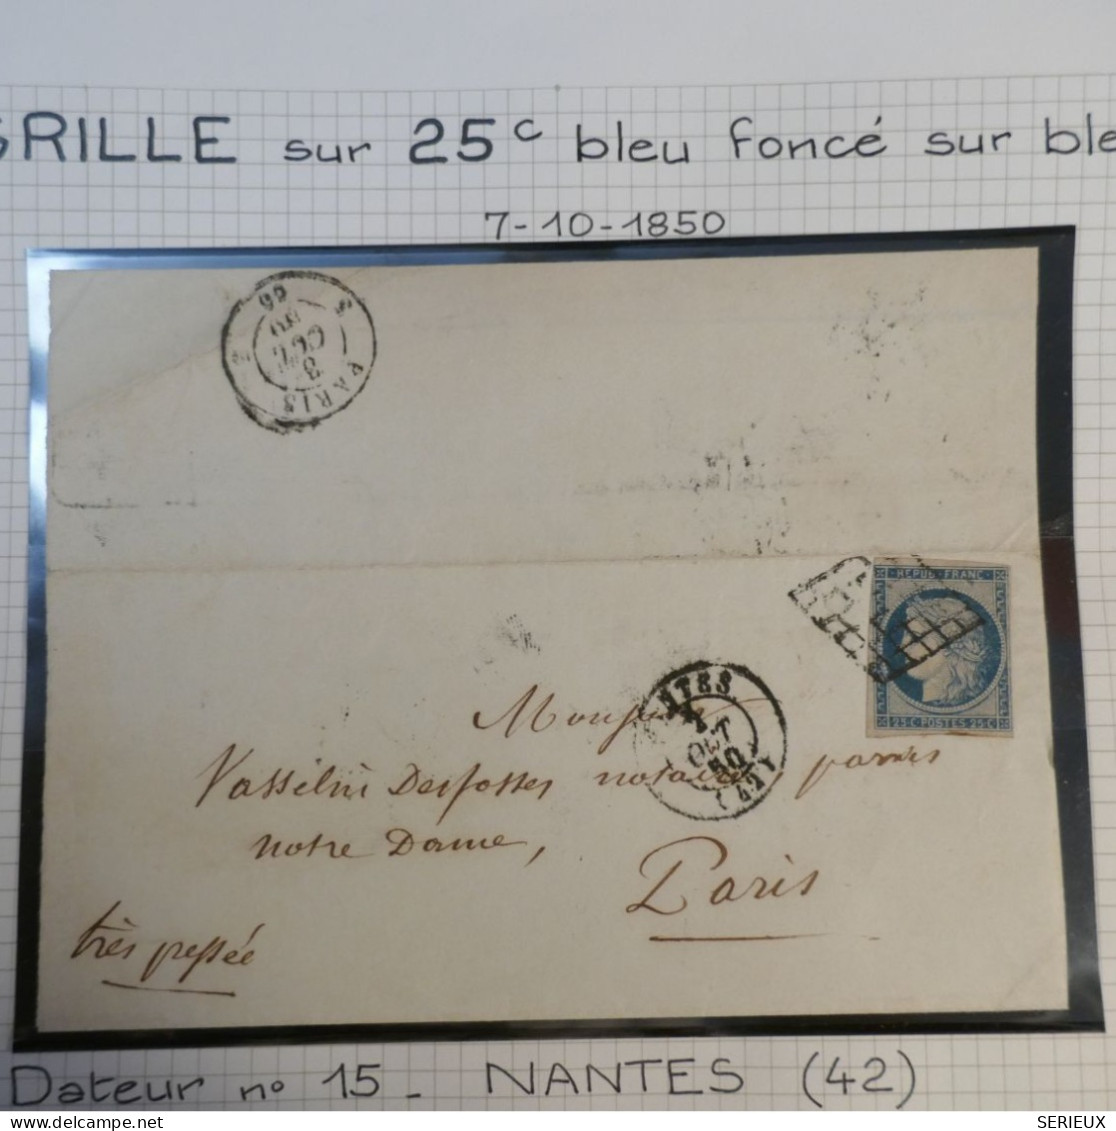 DK3 FRANCE  BELLE LETTRE RARE  7 10. 1850  NANTES A NOTRE DAME  PARIS+ N°4 FONCé + OB. GRILLE +DISPERSION DE COLLECTION+ - 1849-1876: Période Classique